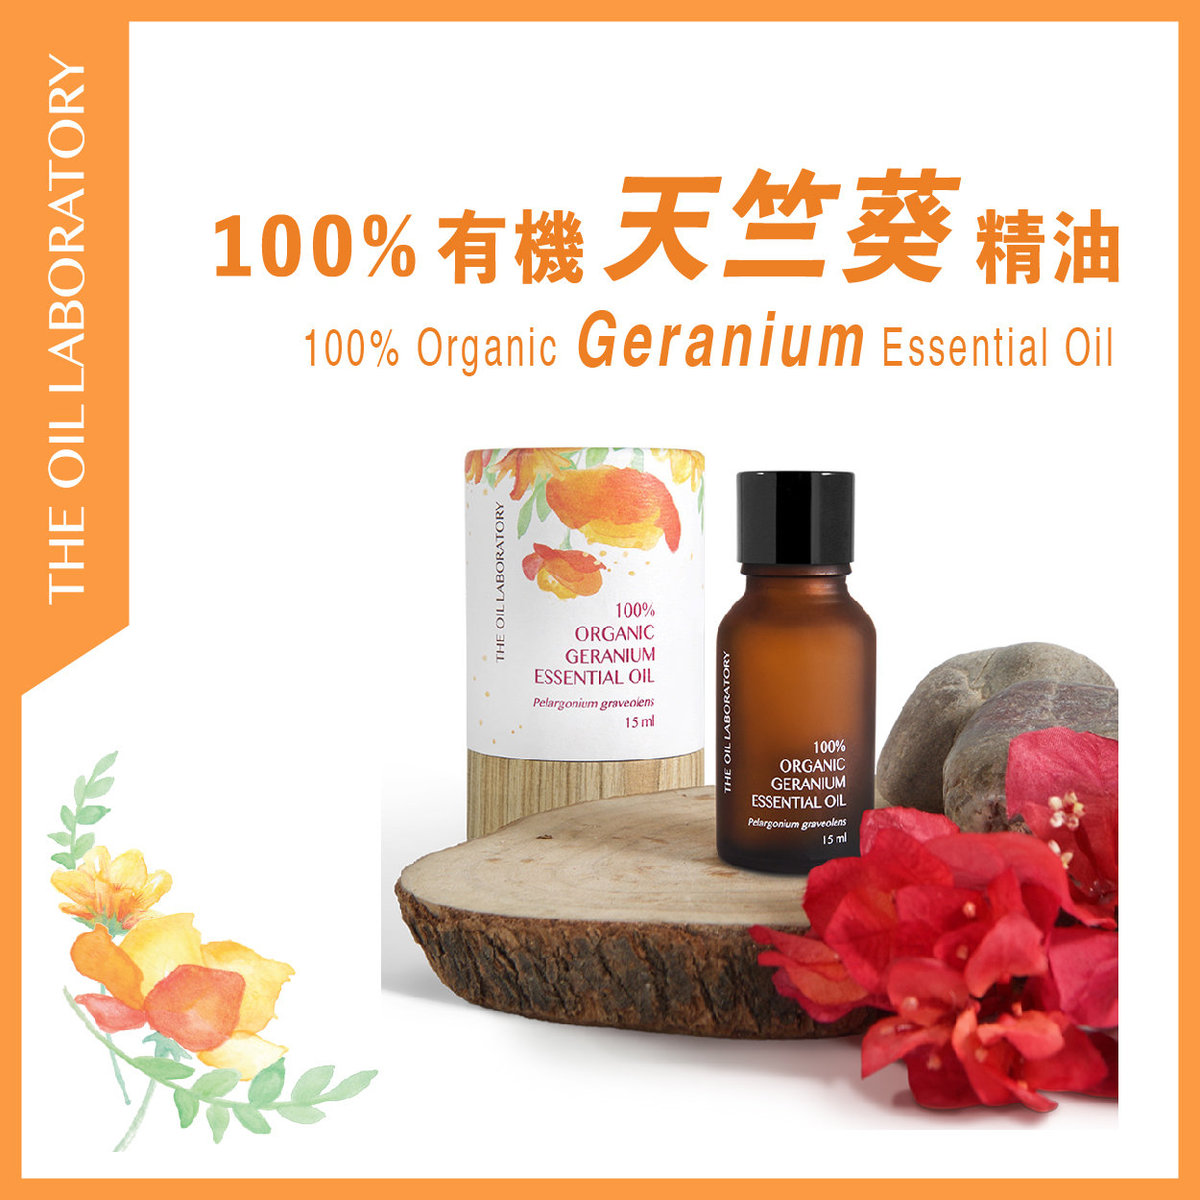 100% Organic Geranium Essential Oil